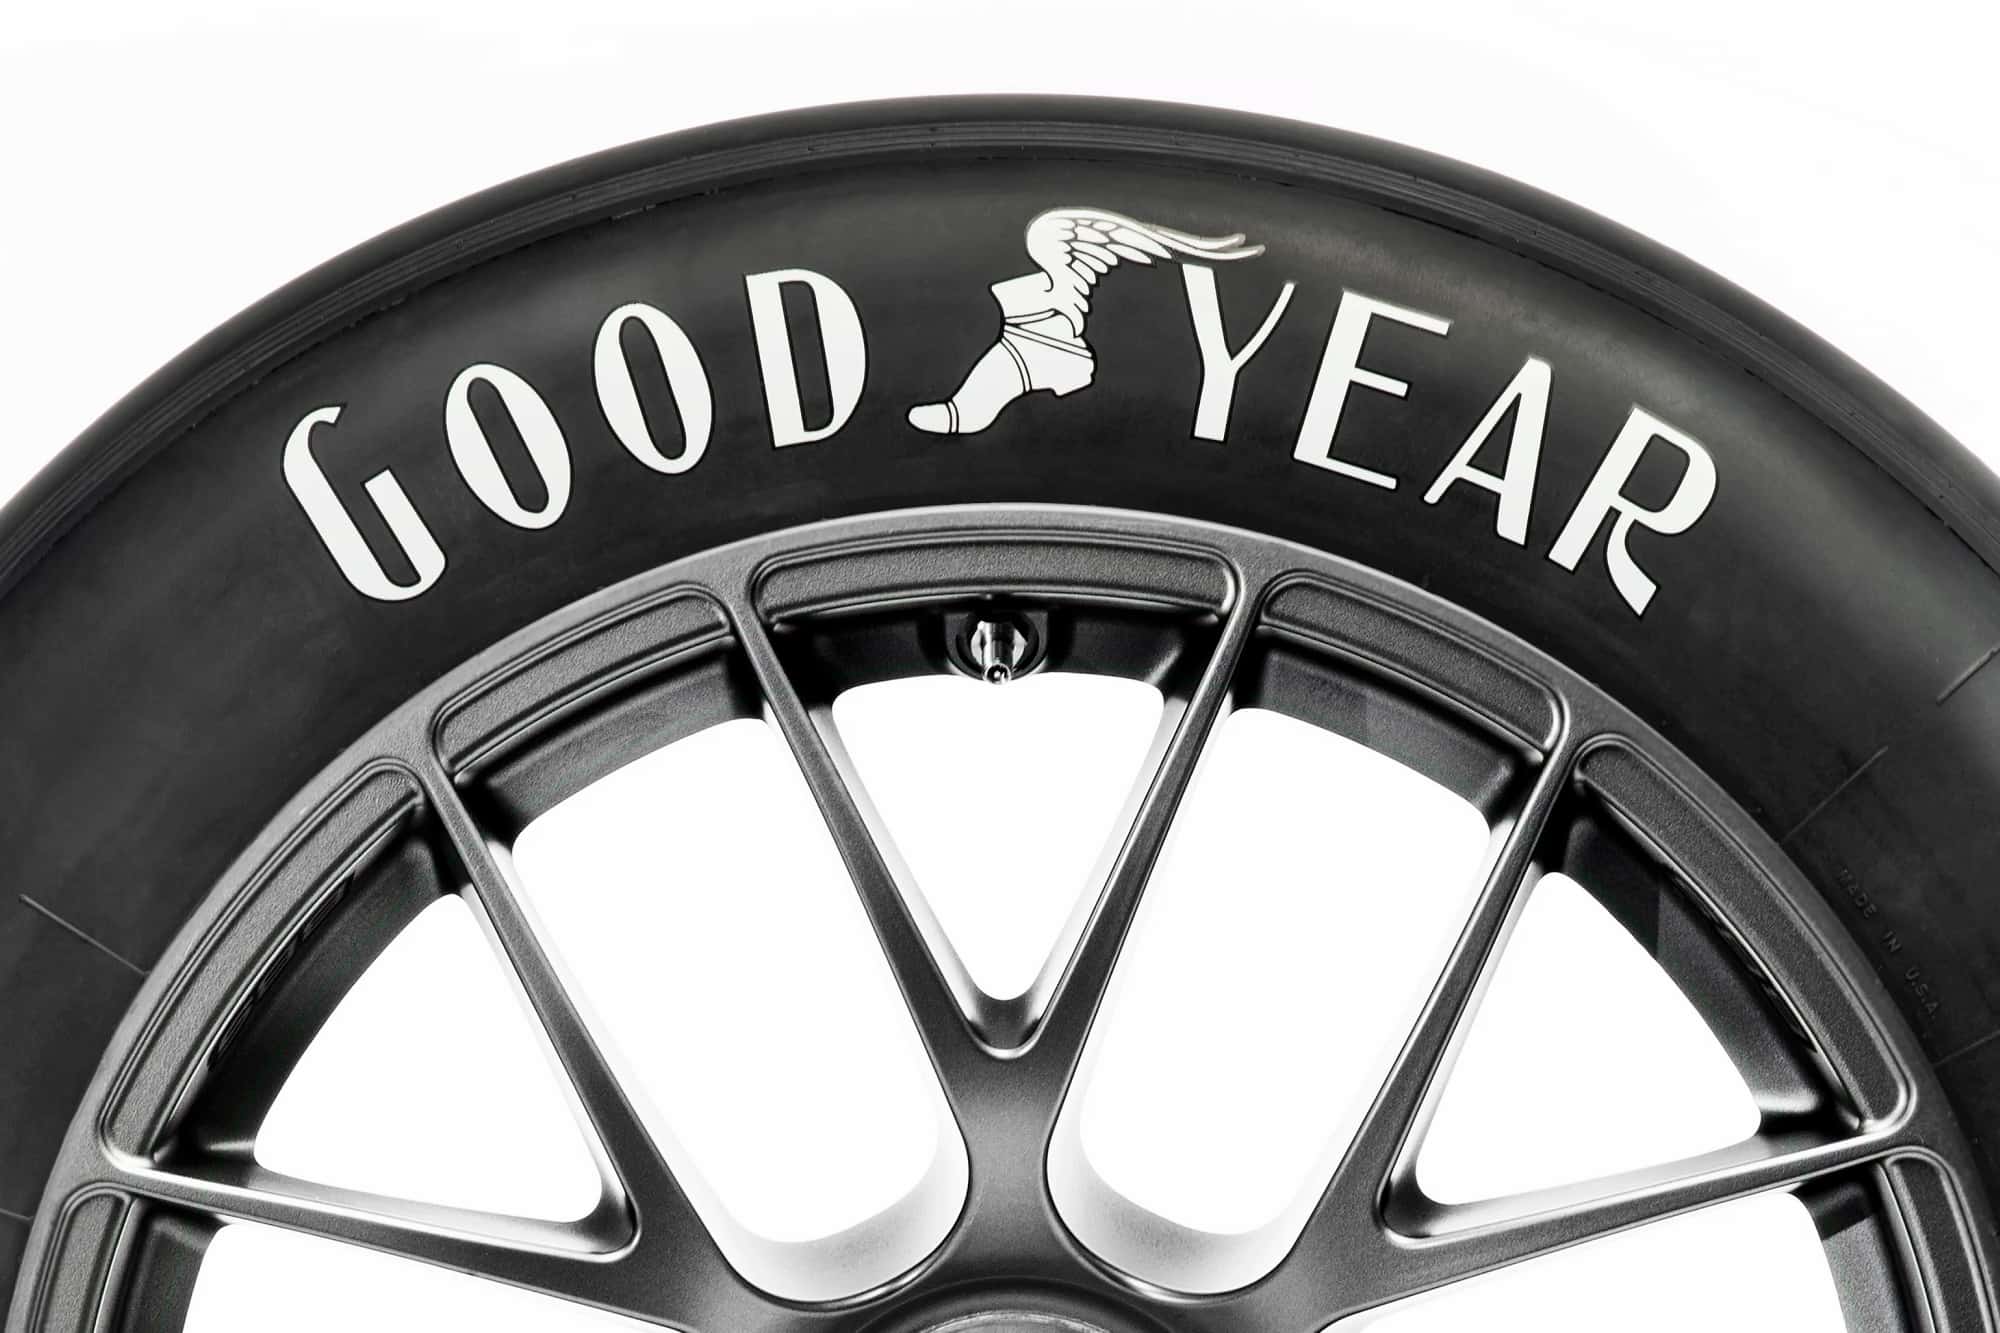 Vuelve el antiguo logo de Goodyear en los neumáticos de carreras NASCAR